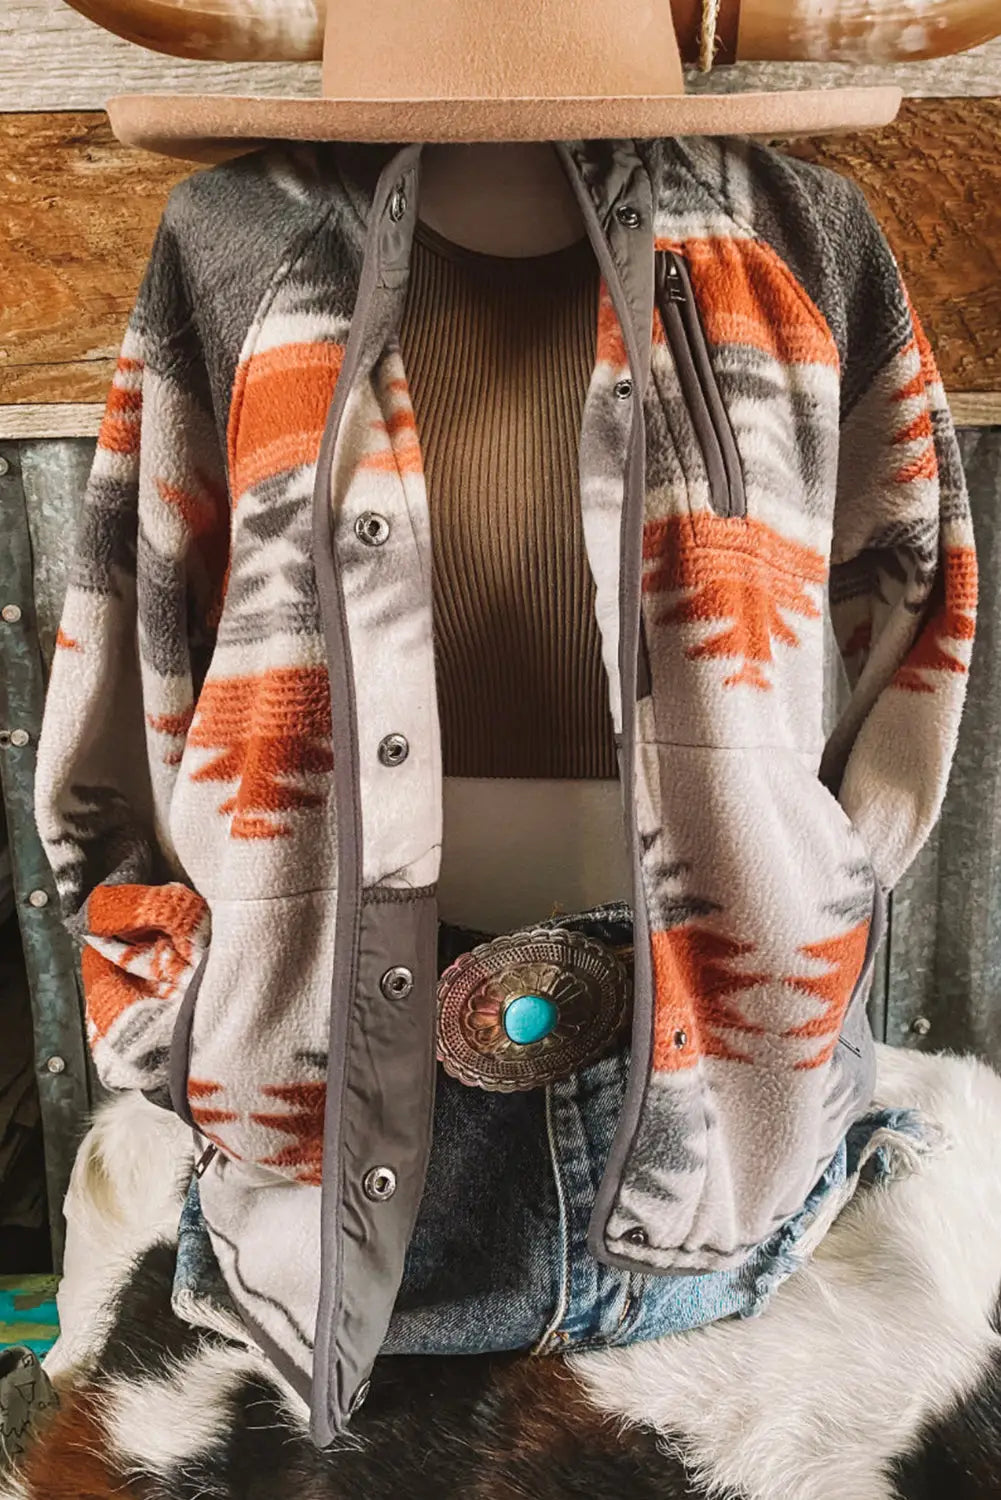 Multicolour aztec fleece patchwork snap button jacket - outerwear